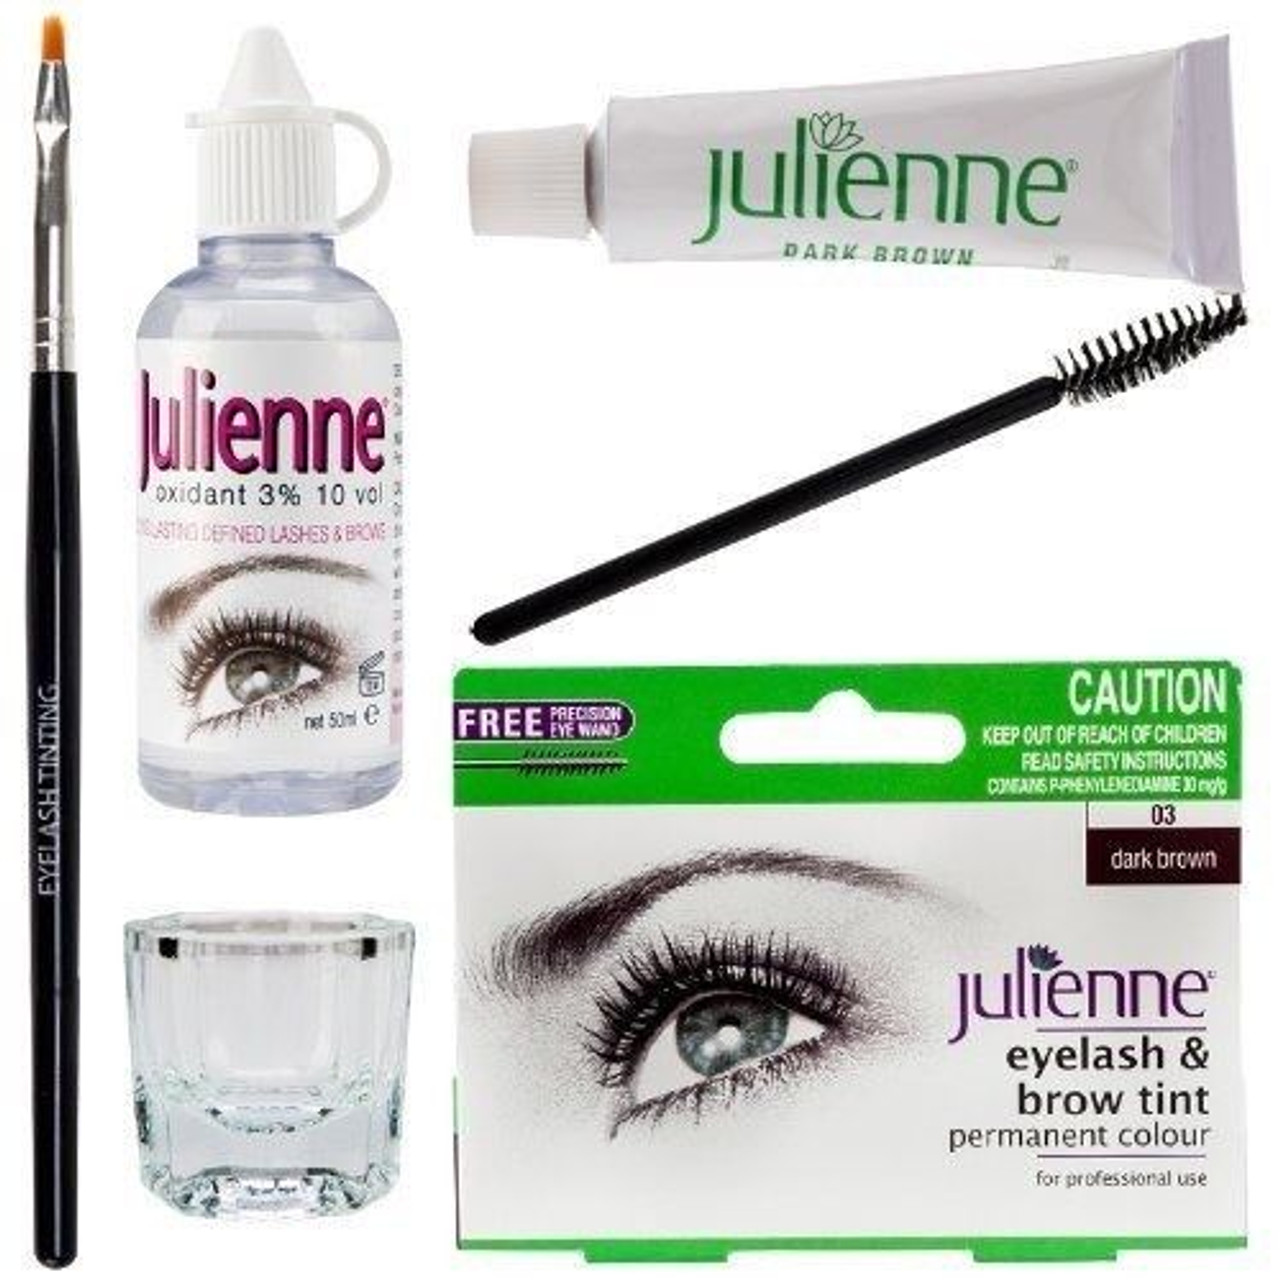 New Julienne Eyelash Eyebrow Tinting Kit Dye Dark Brown 03 Brush